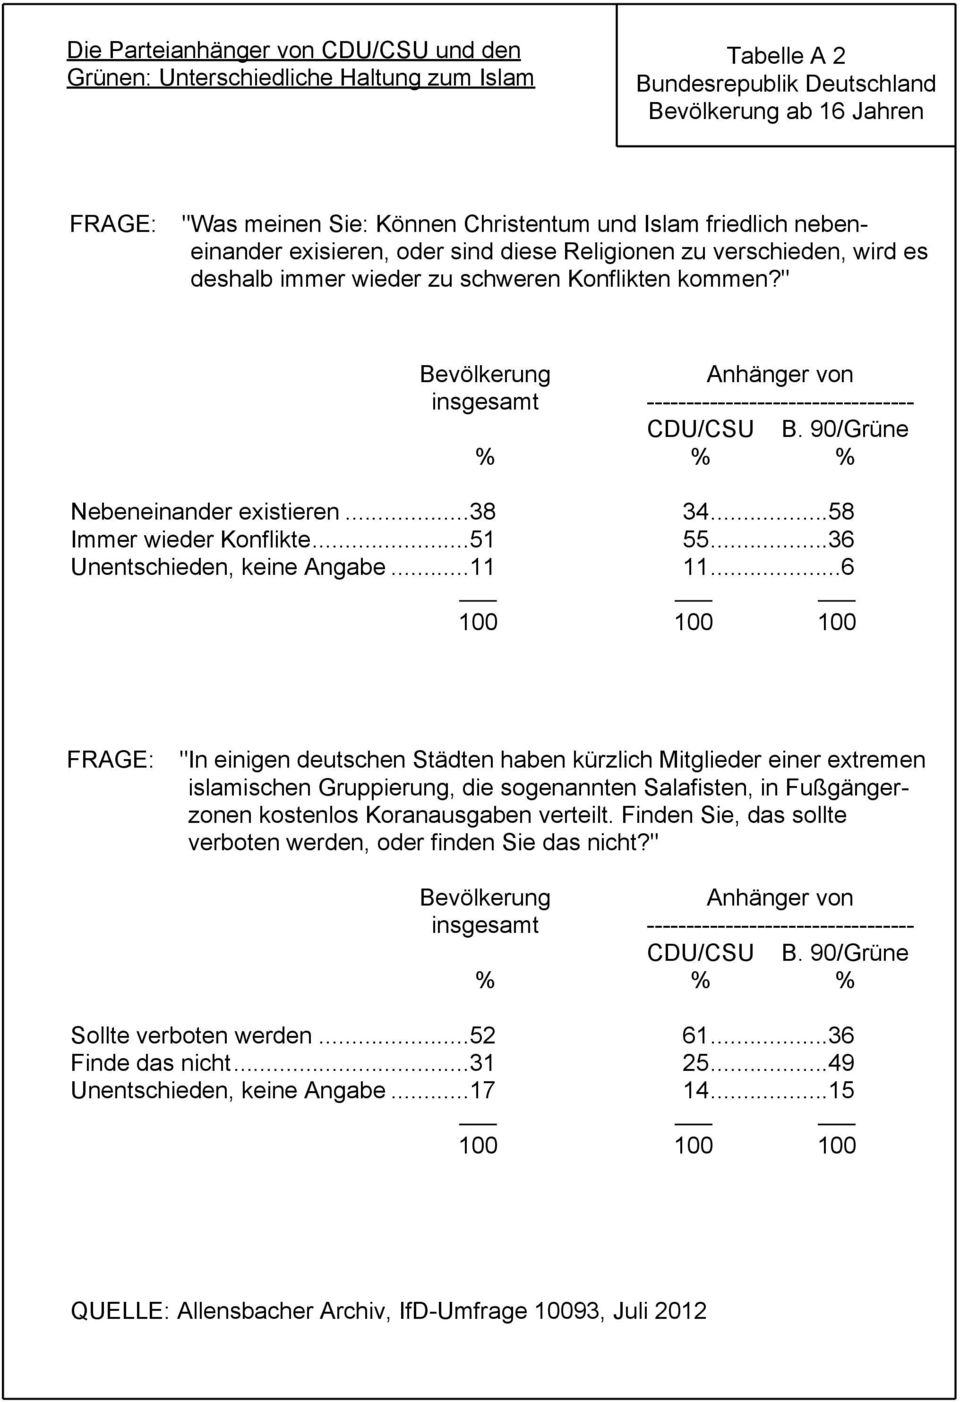 " Bevölkerung Anhänger von insgesamt ---------------------------------- CDU/CSU B. 90/Grüne % % % Nebeneinander existieren...38 34...58 Immer wieder Konflikte...51 55...36 Unentschieden, keine Angabe.